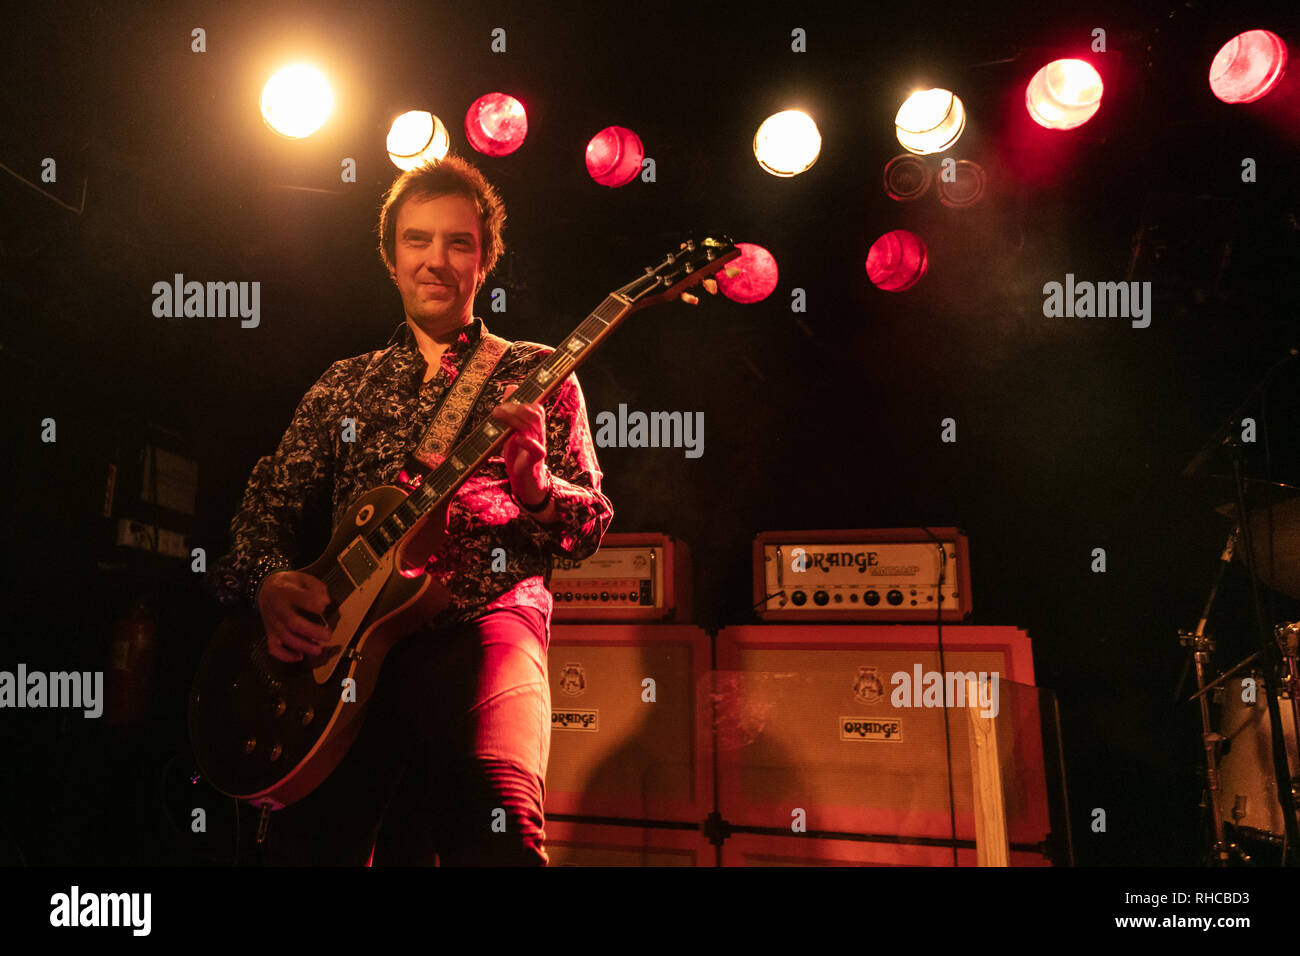 Norvège, Oslo - 1 février 2019. Le groupe de rock britannique Wishbone Ash effectue concert live à John Dee dans Oslo. Ici le guitariste Mark Abrahams est vu sur scène. (Photo crédit : Gonzales Photo - Stian S. Møller). Banque D'Images